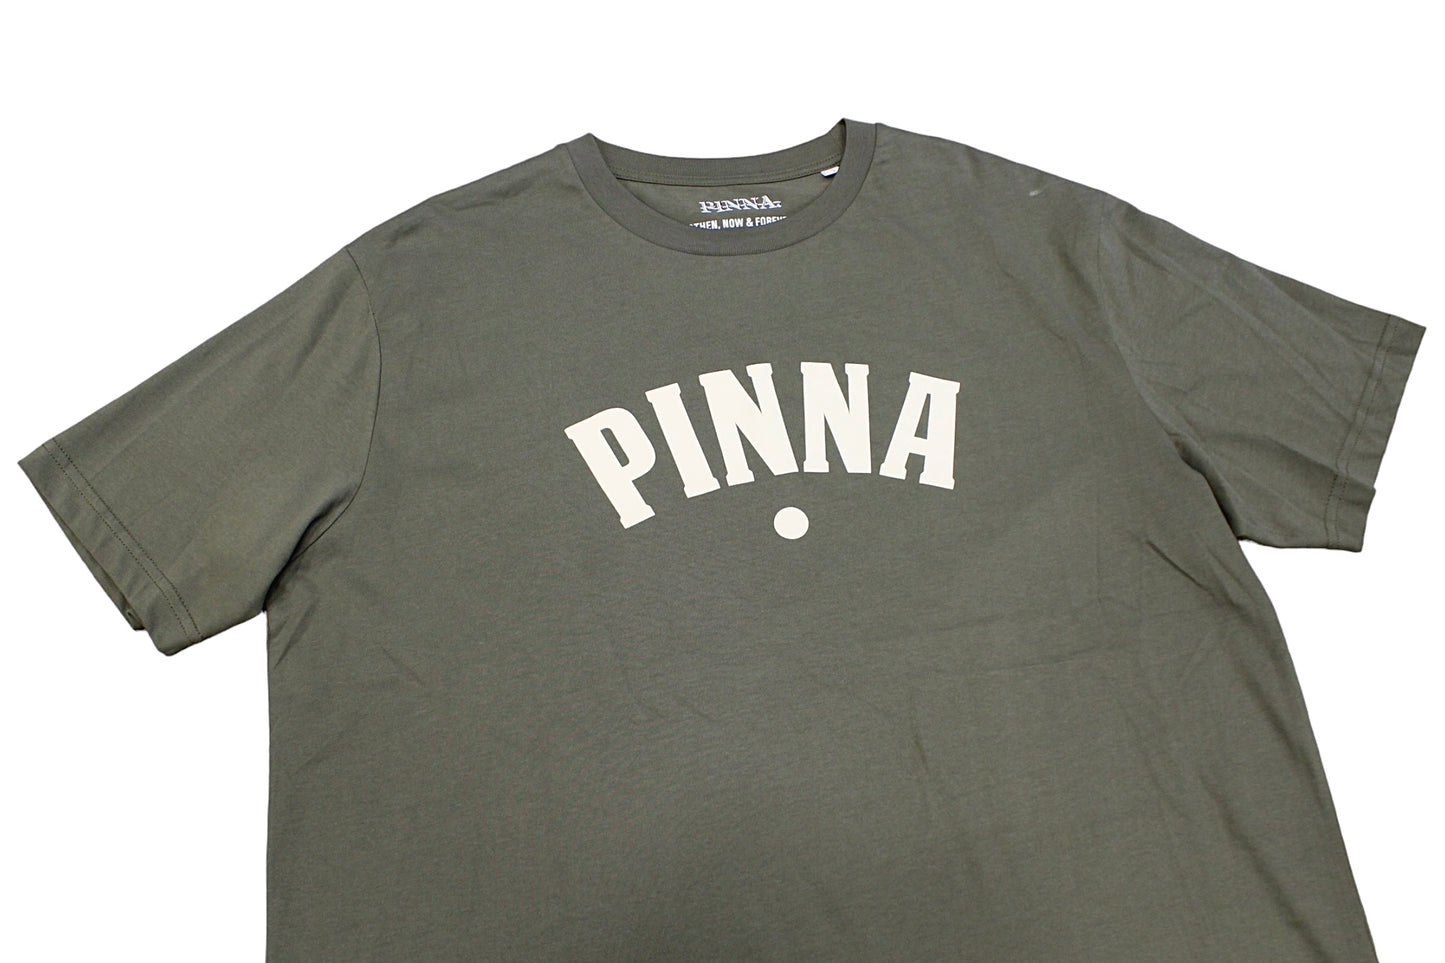 Pinna Khaki ARC T-Shirt